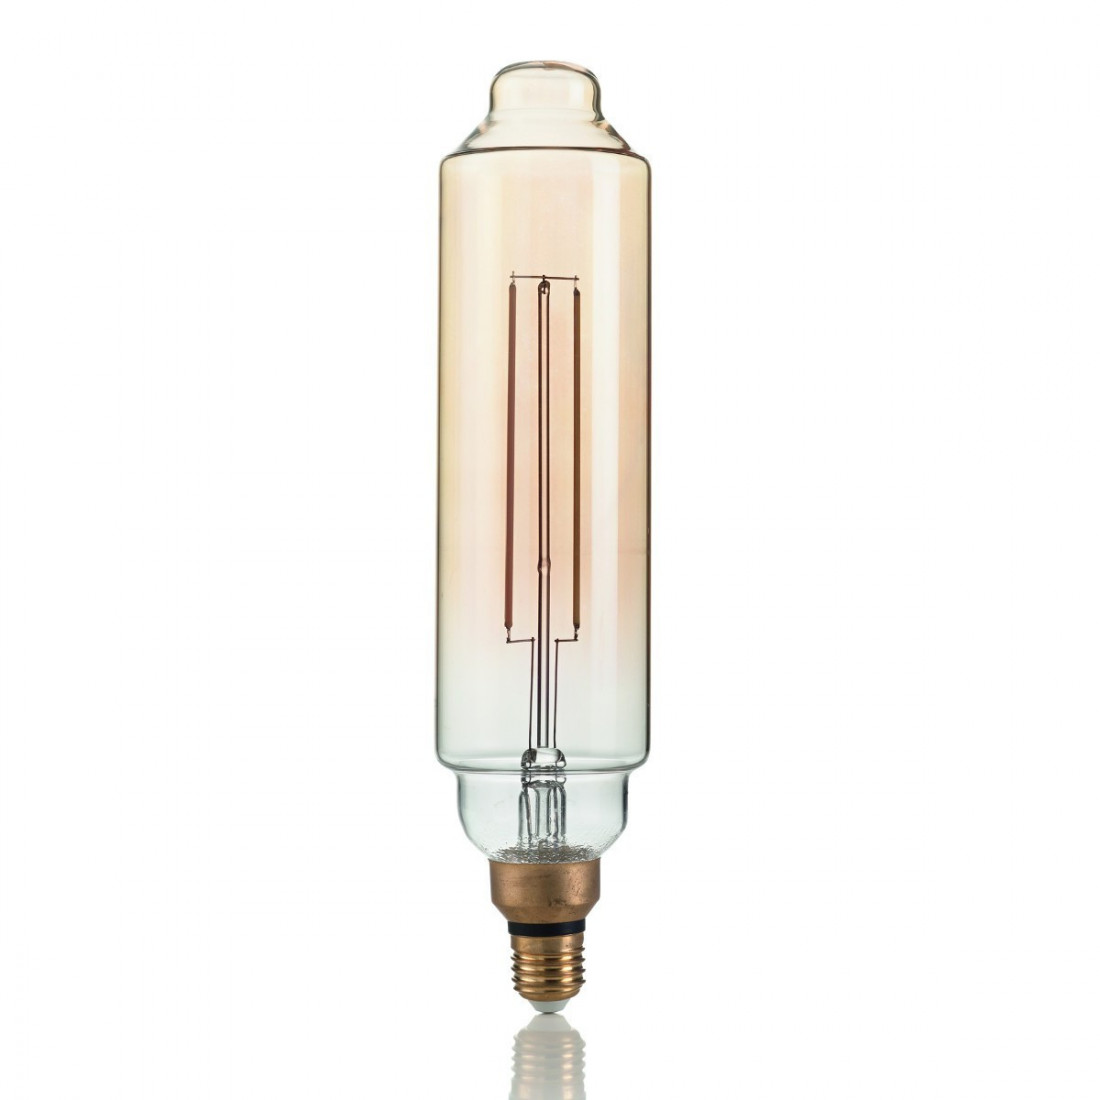 Ampoule ID-VINTAGE XL E27 4W LED 320LM tube de cylindre linéaire en verre ambre rétro lumière très chaude à l'intérieur